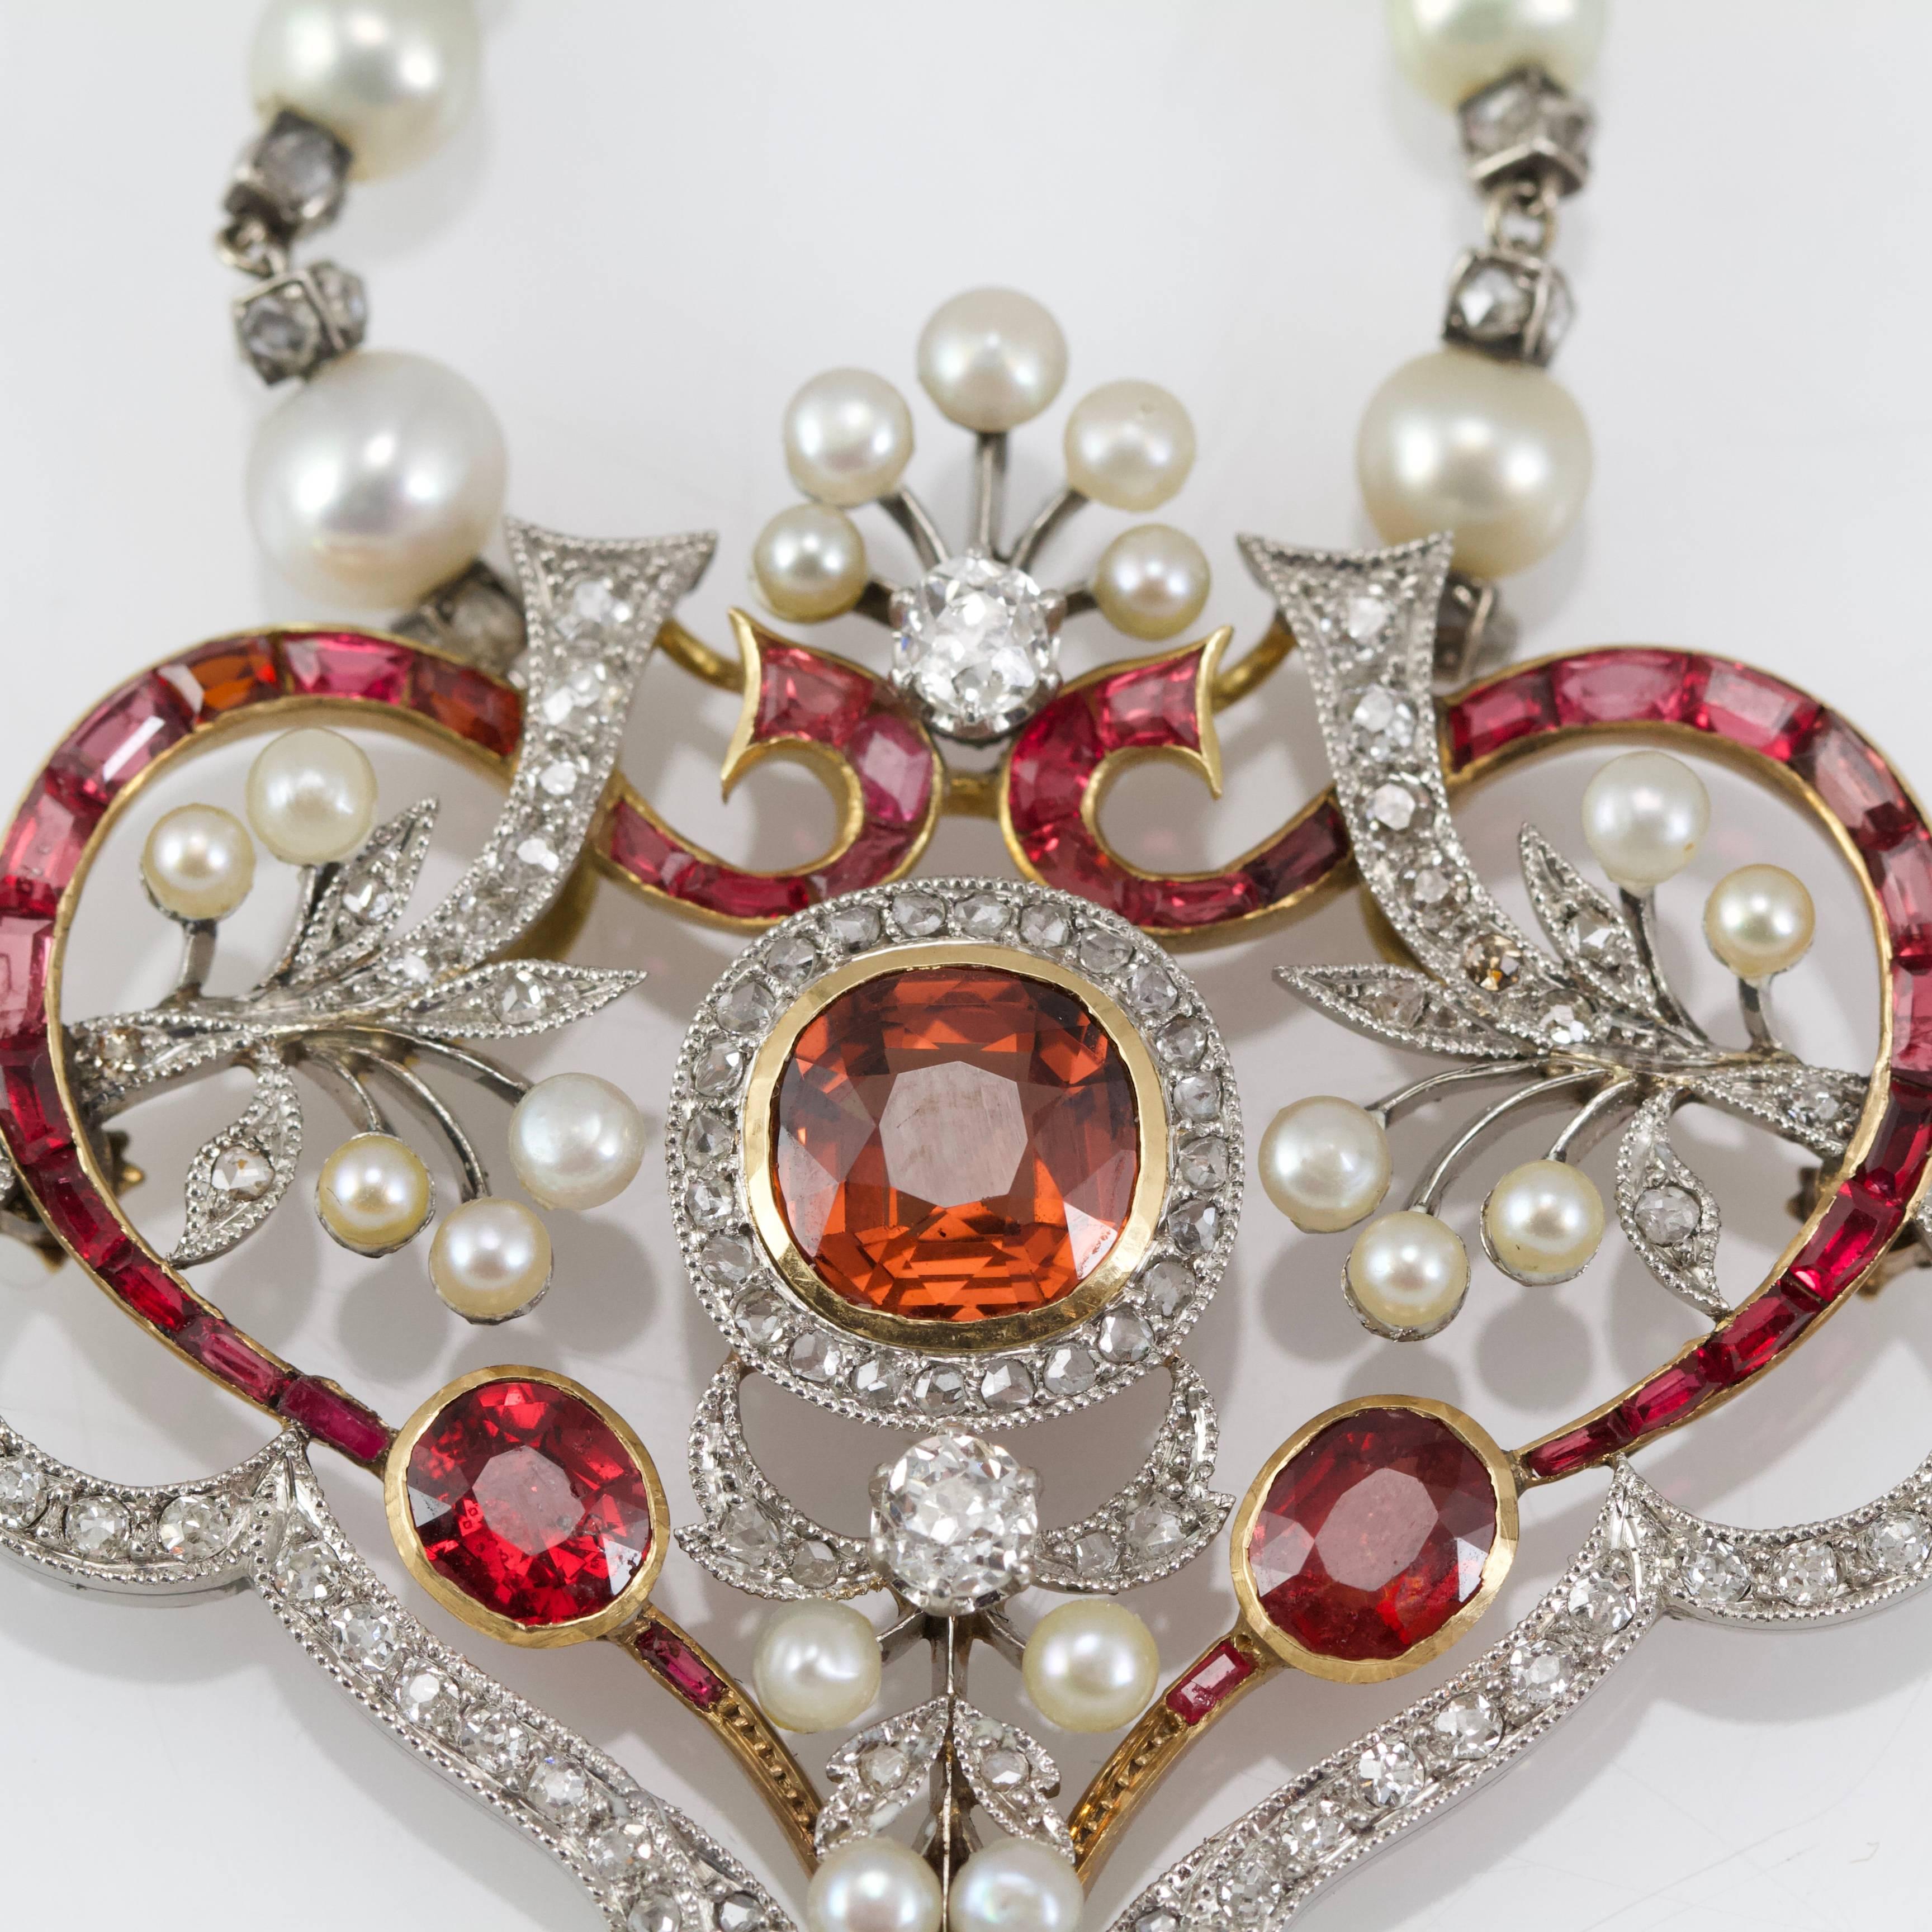 Art Nouveau Belle Epoque Diamond, Spinelle, Garnet and Pearls Necklace from Paris